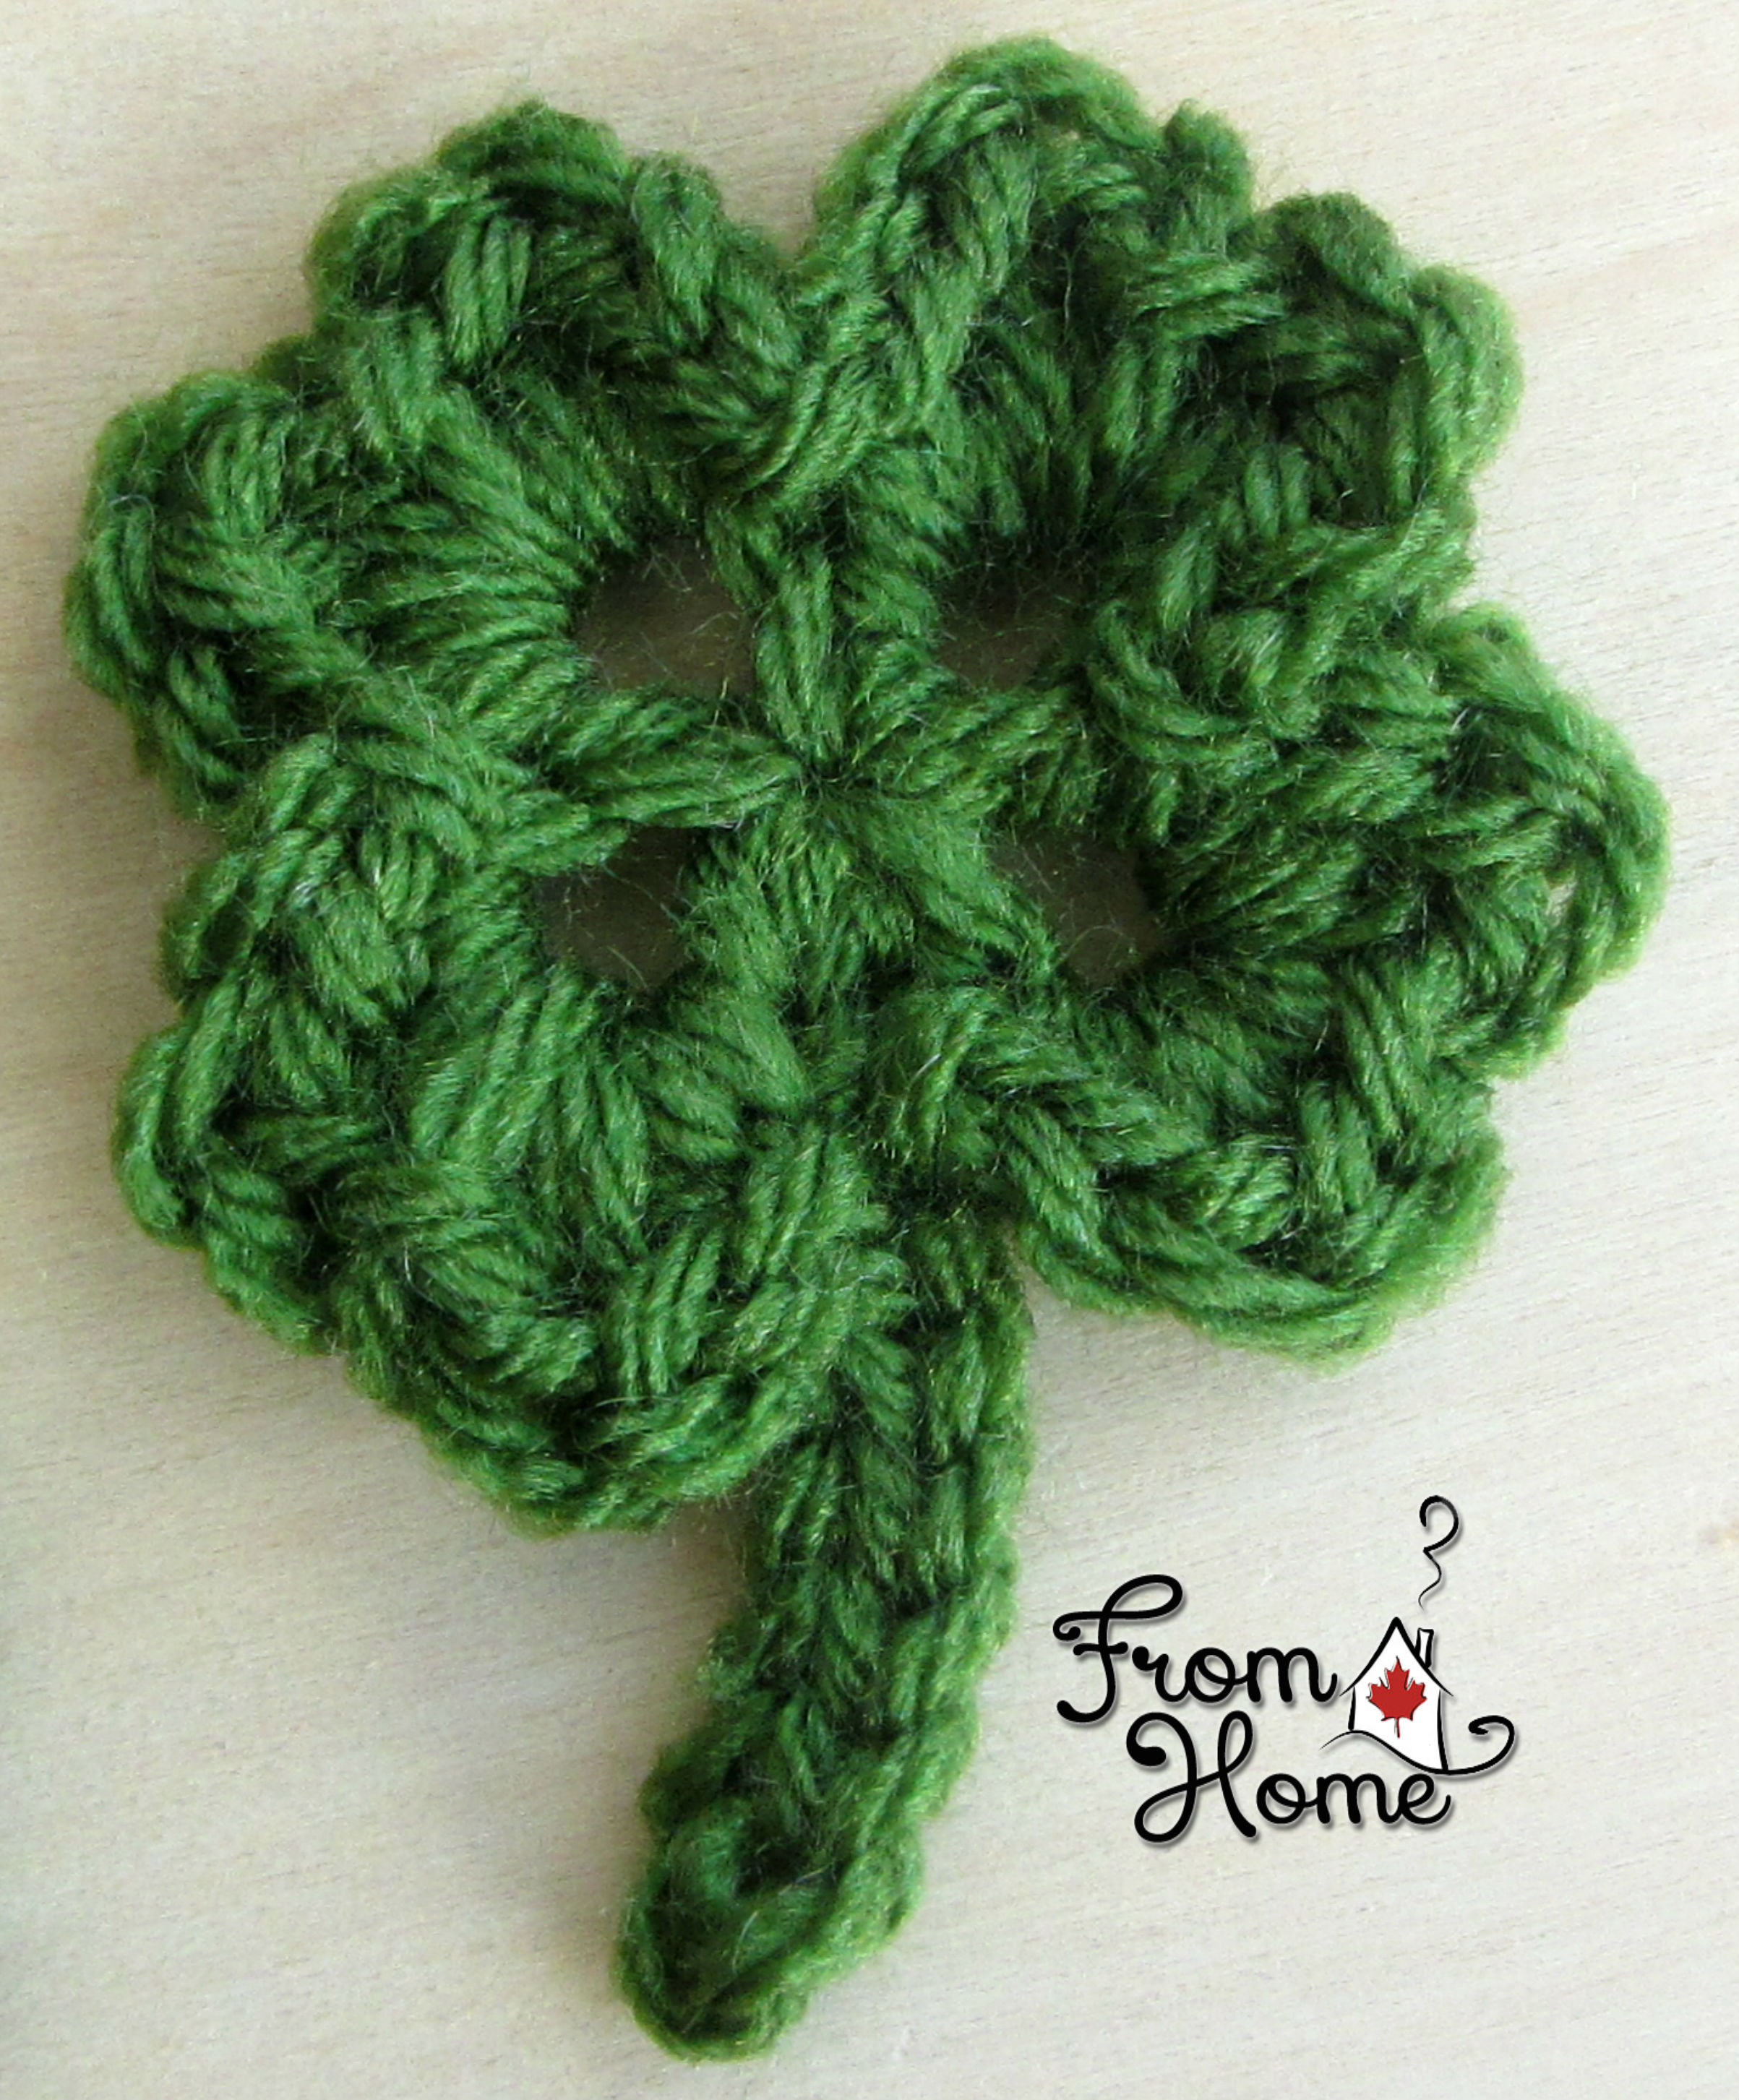 Free Crochet Applique Patterns Clover Applique Free Crochet Pattern From Home Crochet